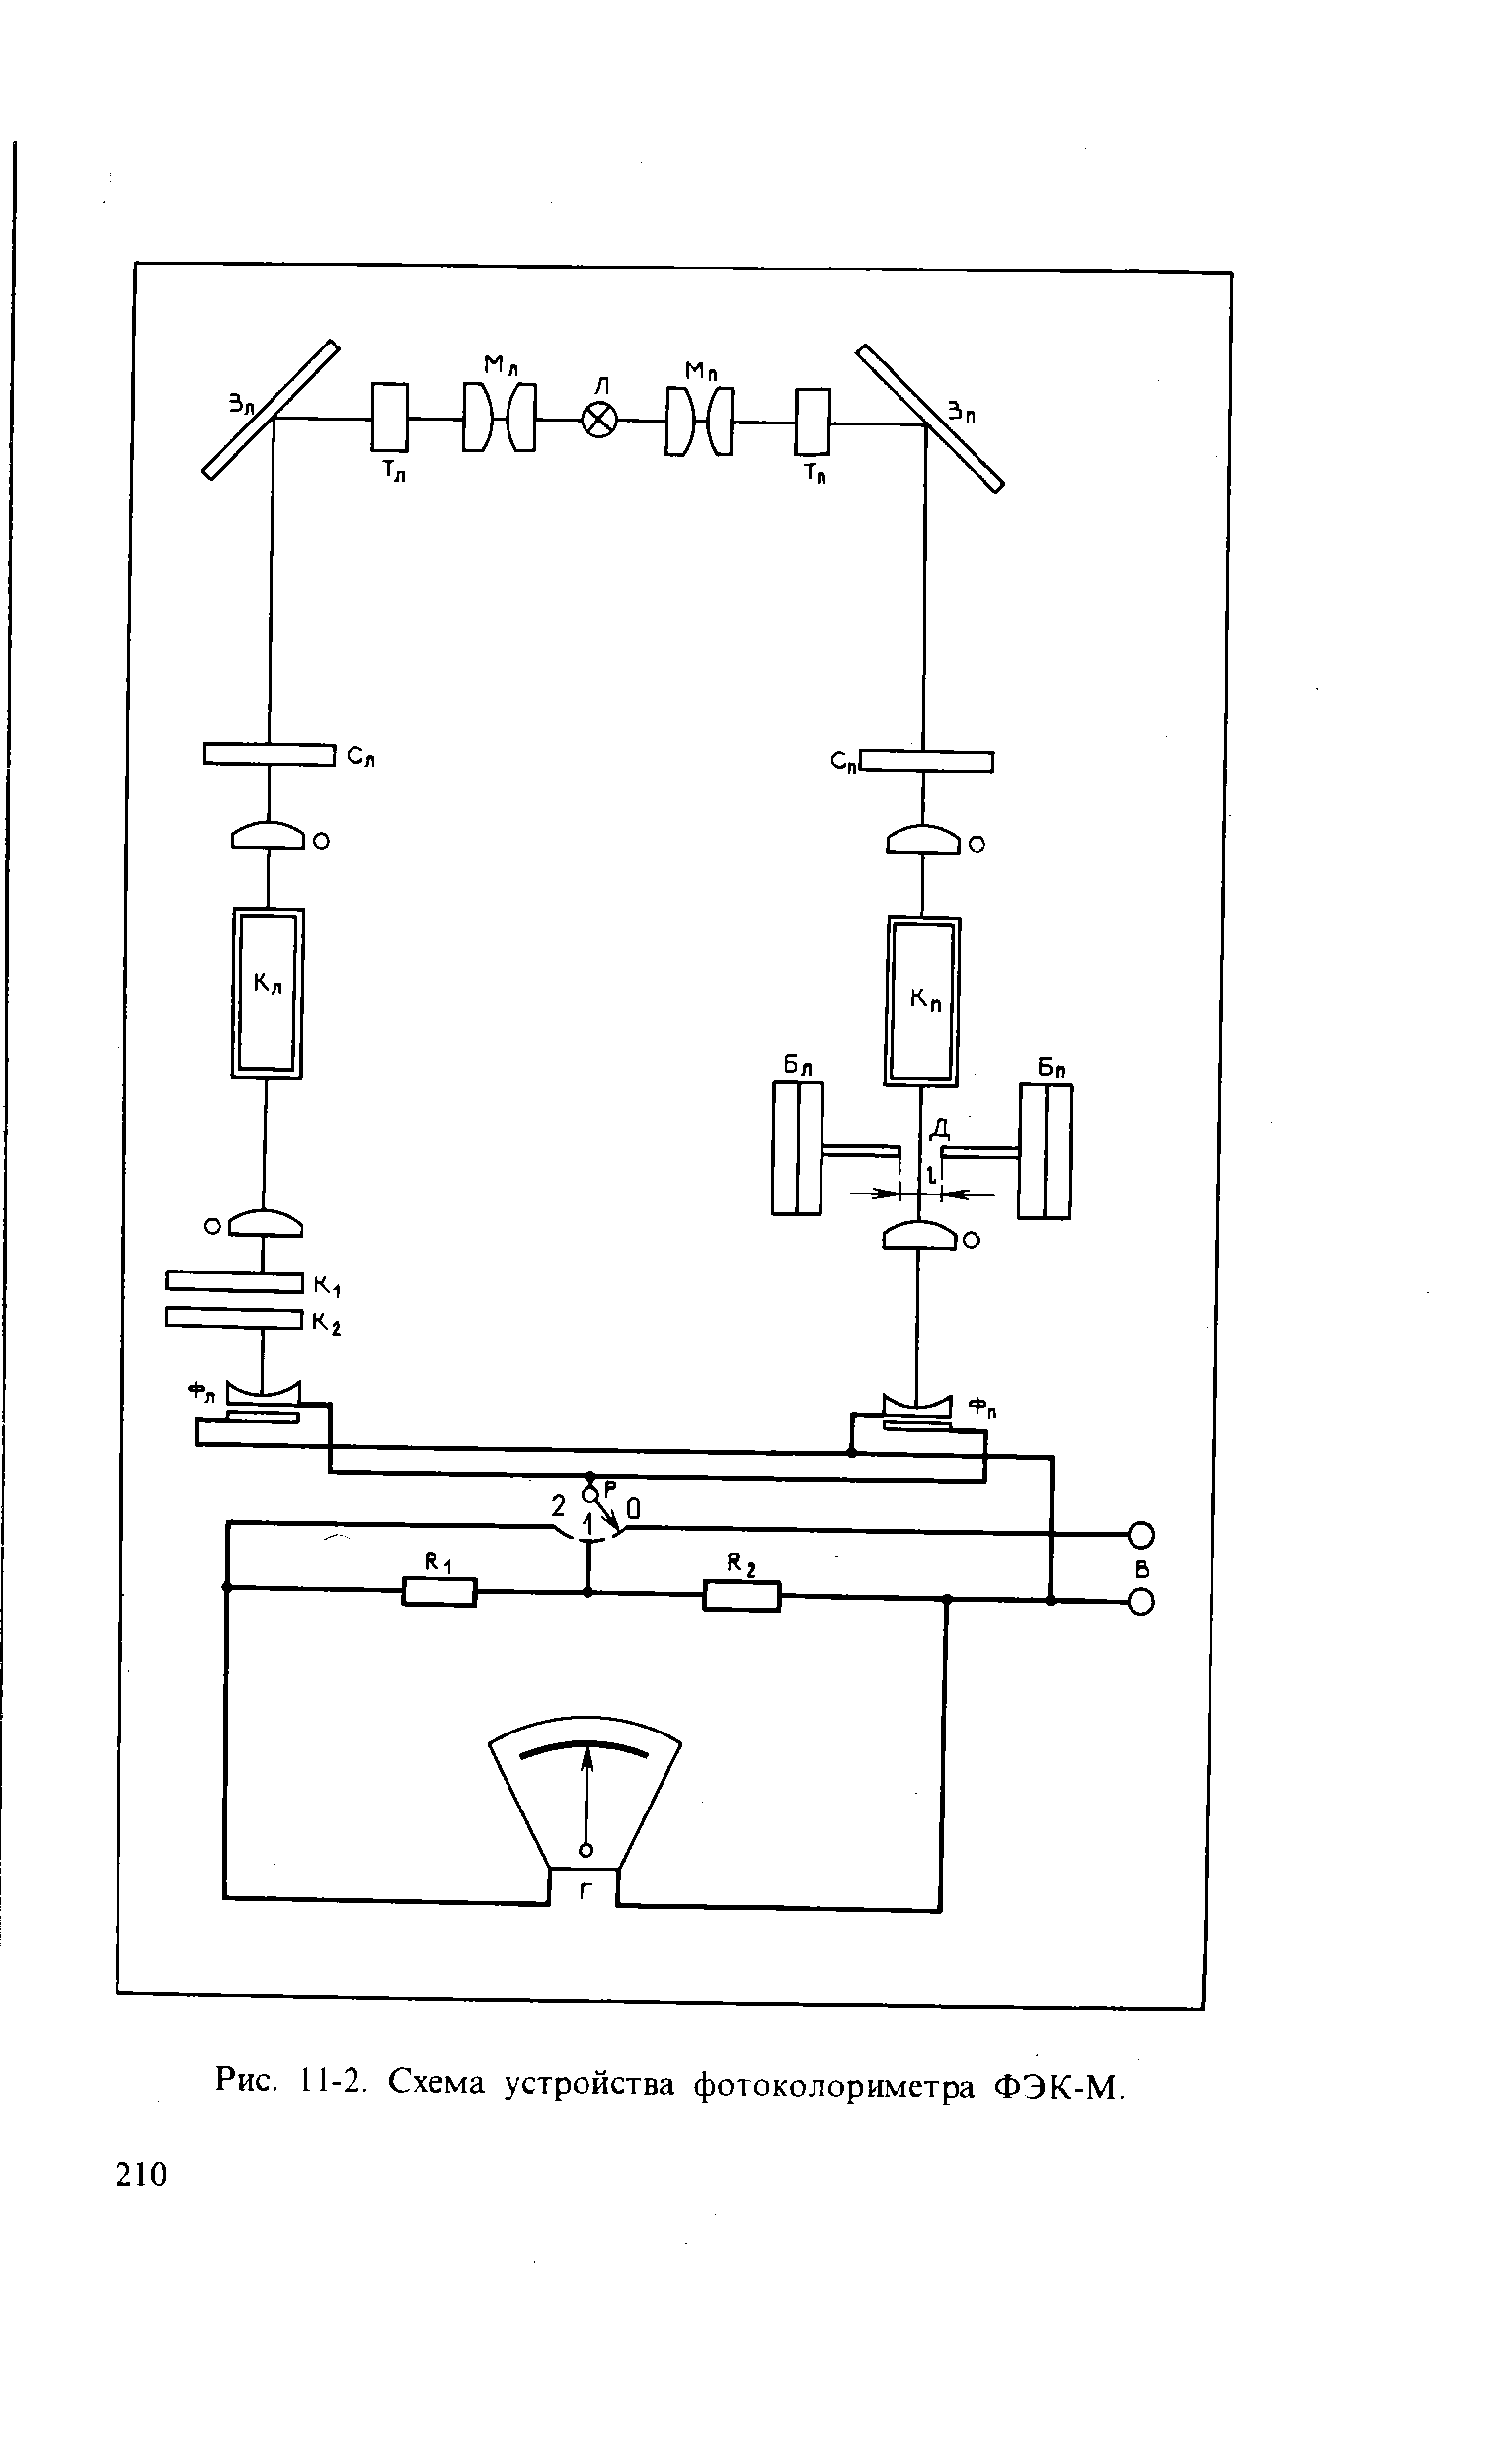 Рис. 11-2. Схема устройства фотоколориметра ФЭК-М.
